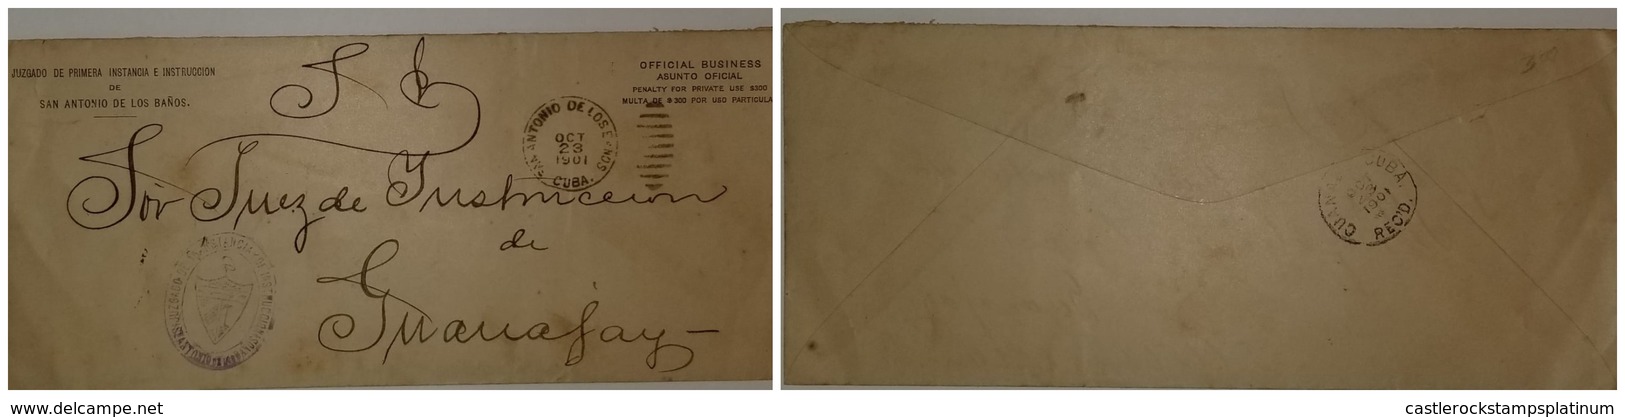 O) 1901 CUBA - SPANISH ANTILLES, SAN ANTONI ODE LOS BAÑOS, OFFICIAL BUSINESS - ASUNTO OFICIAL, JUZGADO DE PRIMERA INSTAN - Lettres & Documents